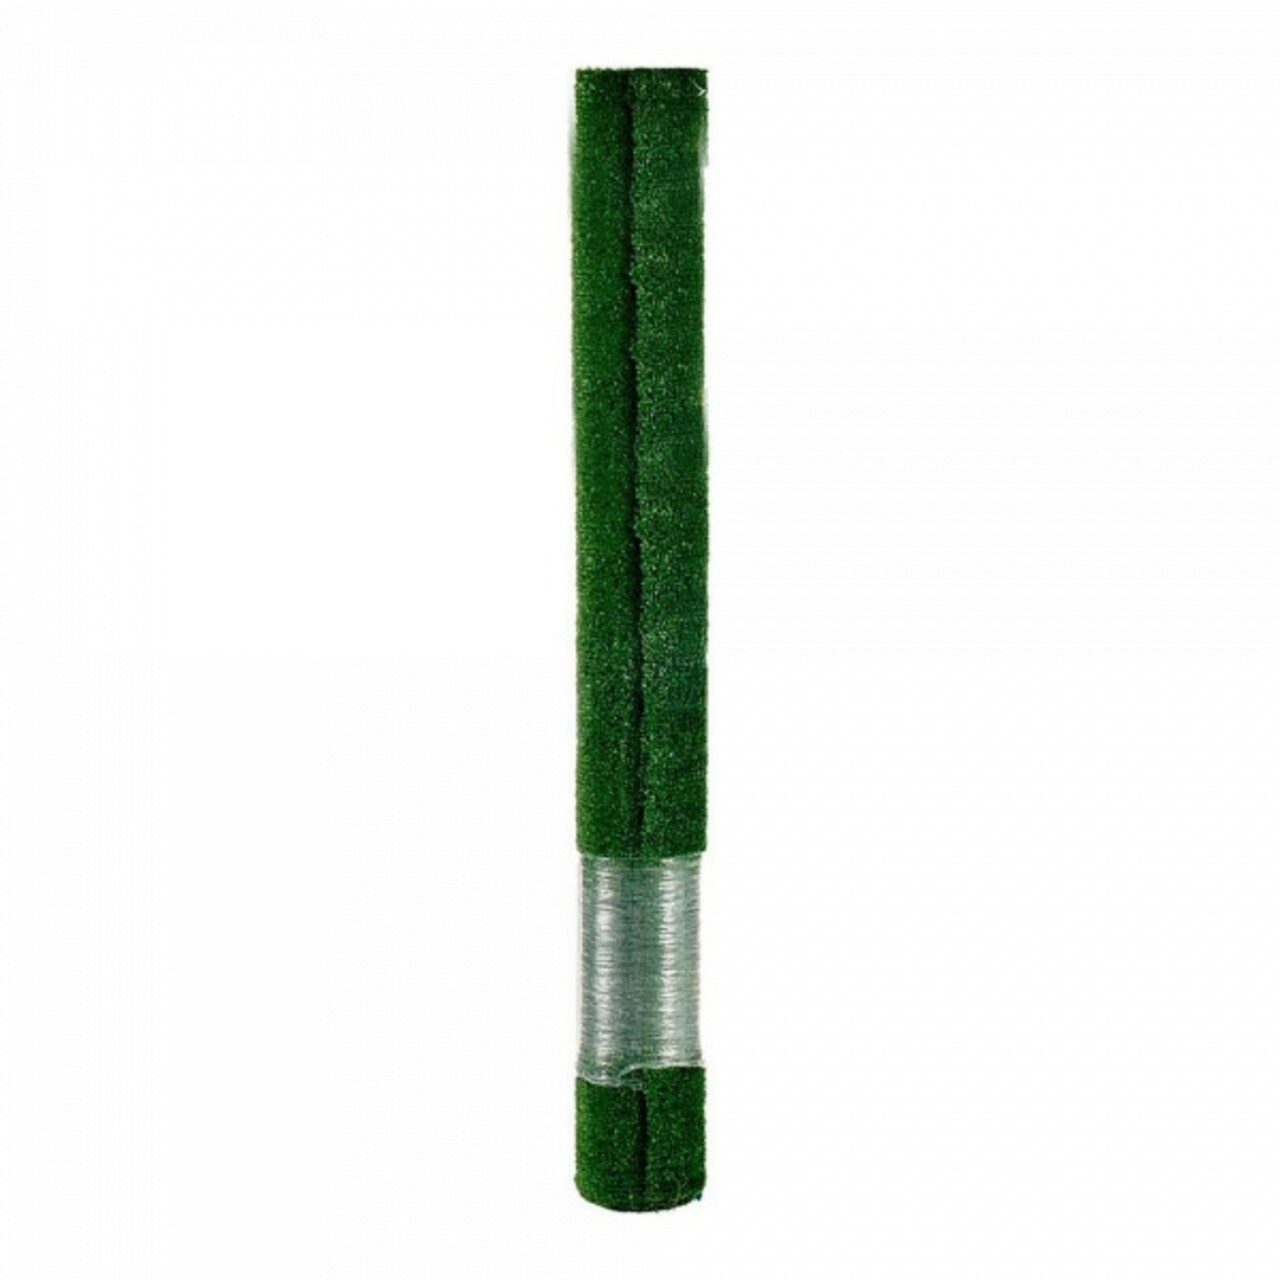 Gazon artificial Rug, Ibergarden, 100x400x0.07 cm, polietilena/polipropilena